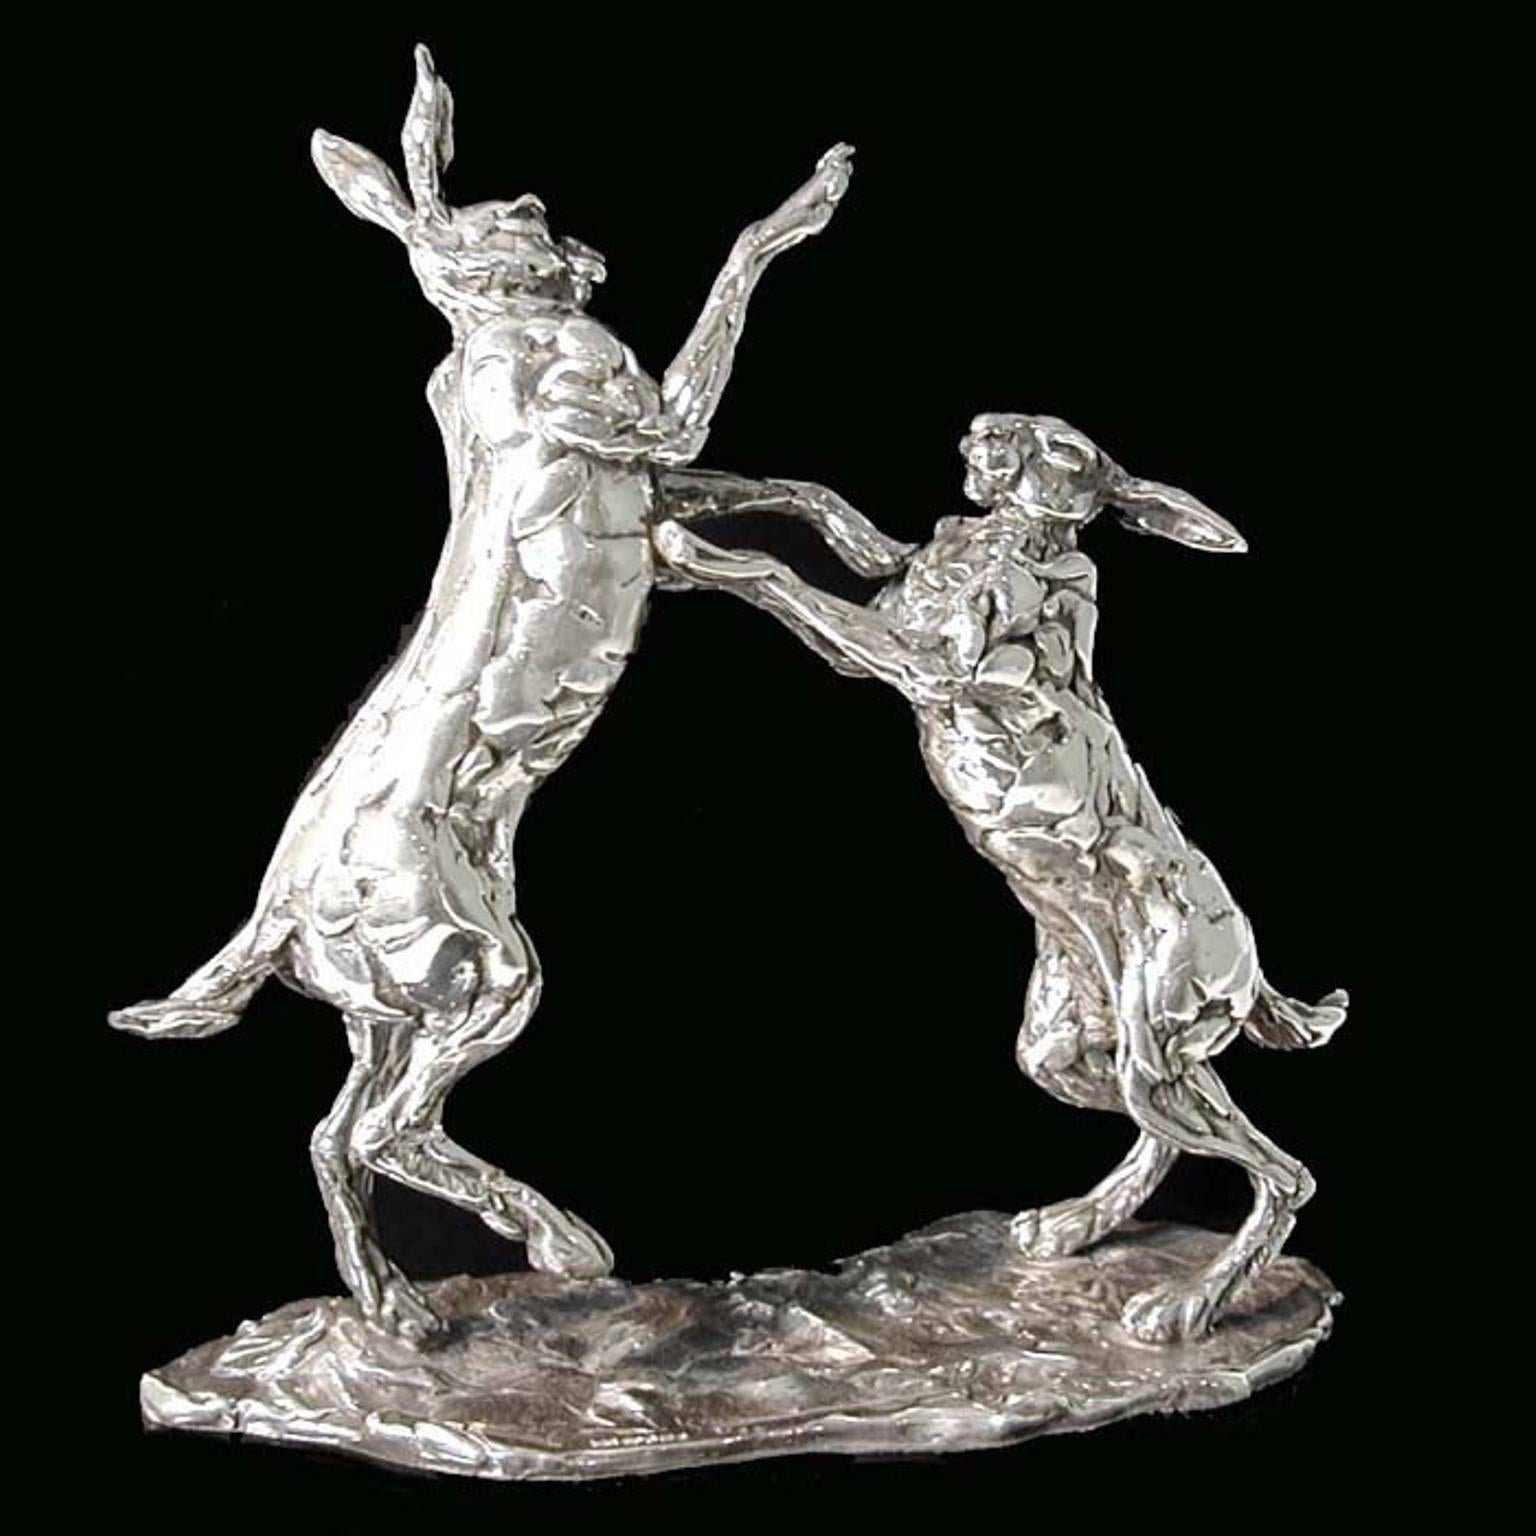 Hauteur 20,5 cm x longueur 20 cm
1187 grammes

Une sculpture en argent sterling "Boxing Hares" de Lucy Kinsella, une édition limitée d'une paire de lièvres bruns aux longues oreilles en plein combat de boxe, l'un se tenant droit sur ses pattes